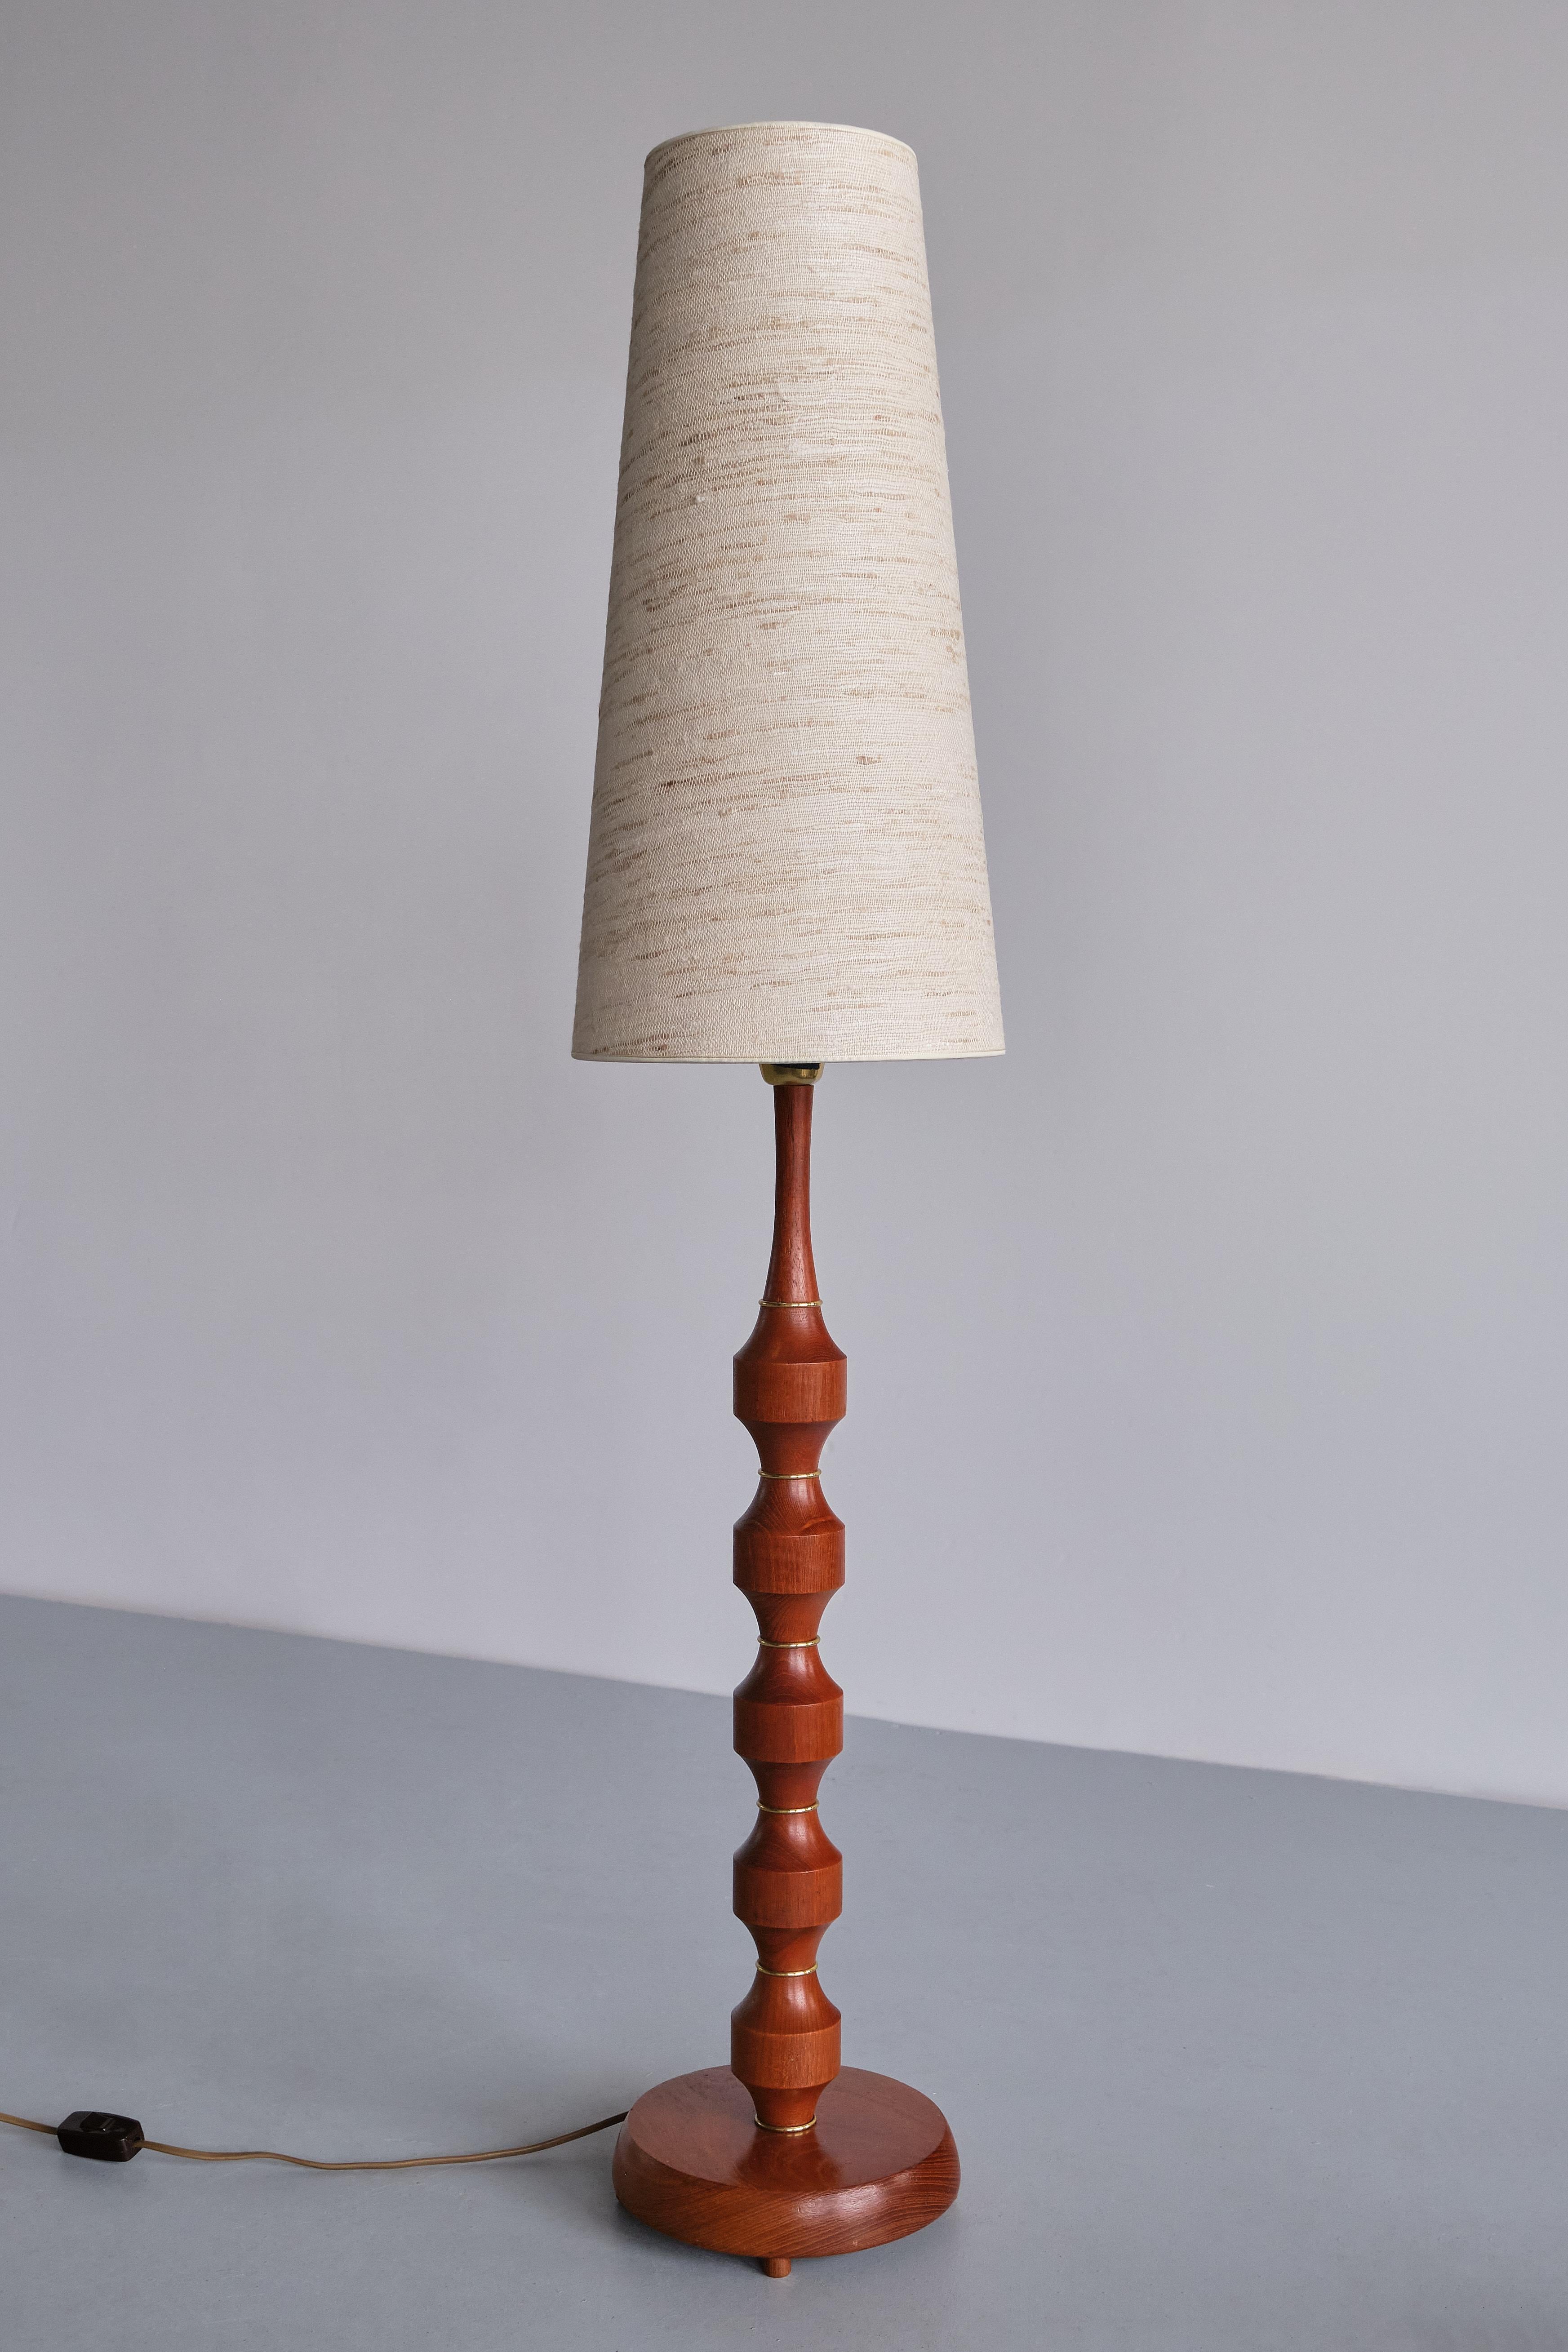 Ce remarquable lampadaire a été produit par Möllers Armaturfabrik à Eskilstuna, en Suède, à la fin des années 1950. La lampe porte le Label du fabricant et le numéro de modèle 94 sur le raccord.
Le design consiste en une base circulaire légèrement